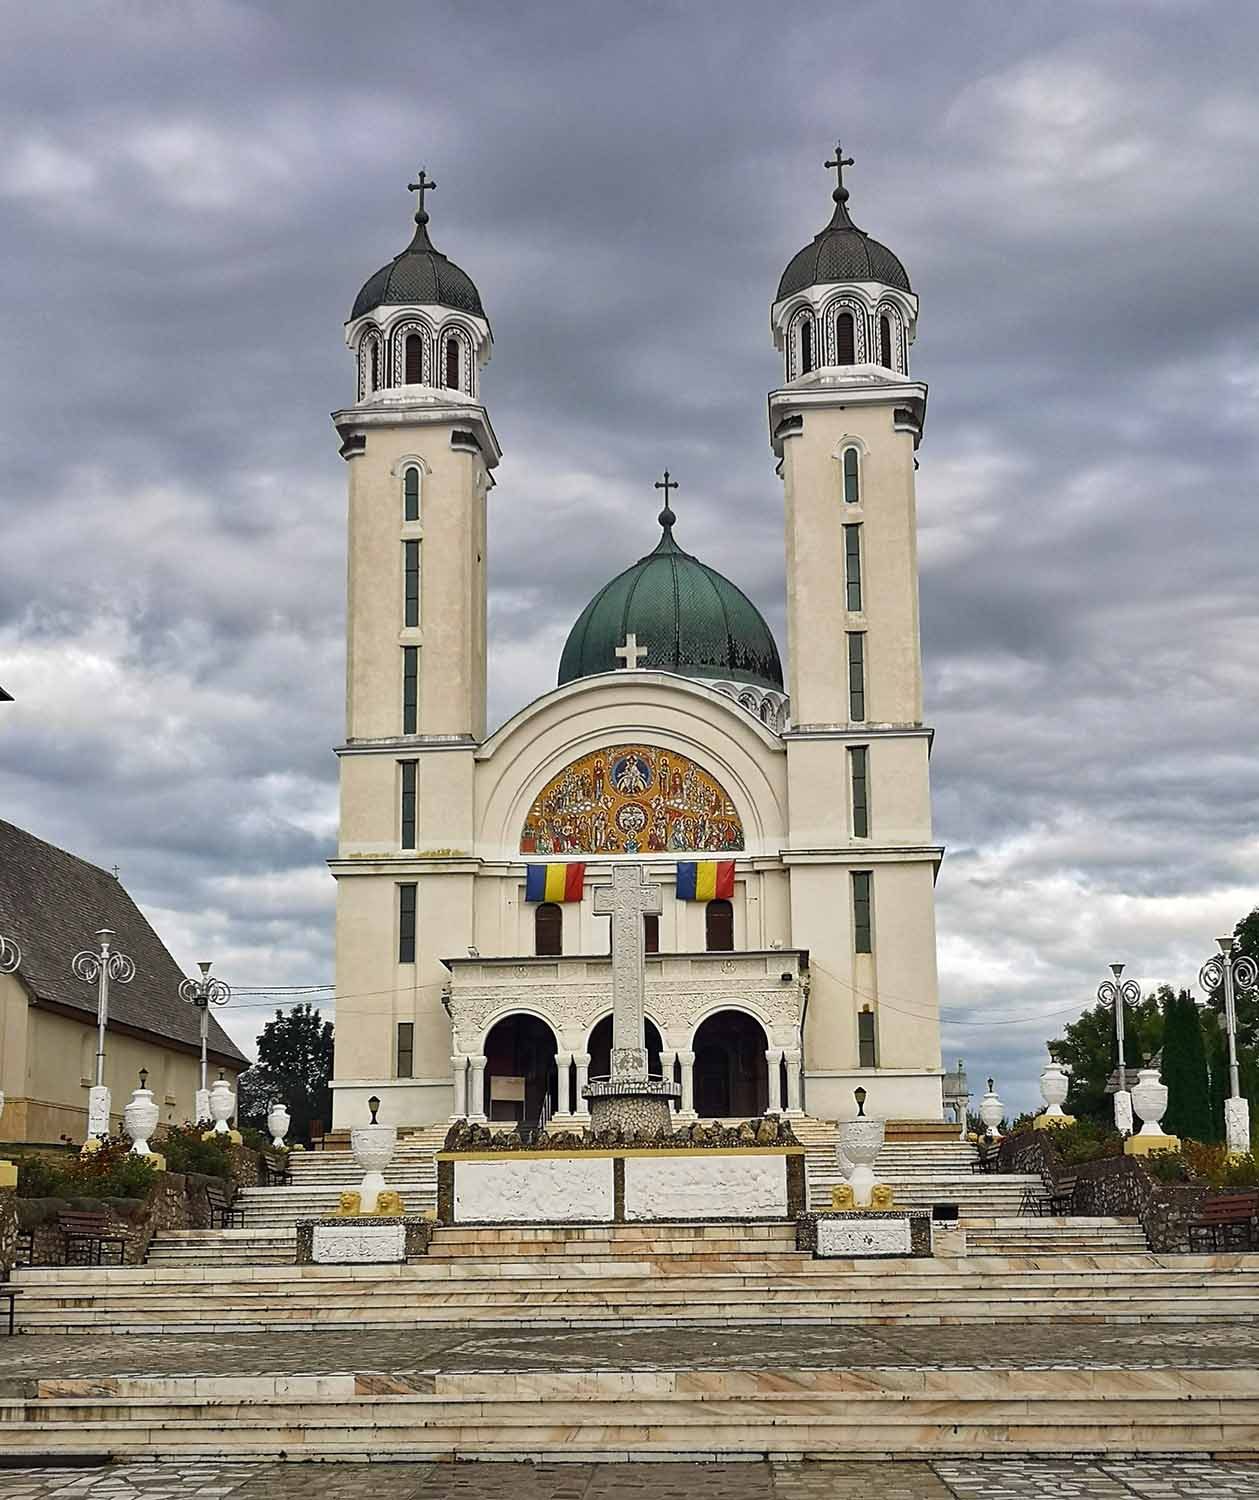 The magnificent Padureni Cathedral, in Ghelari, Hunedoara